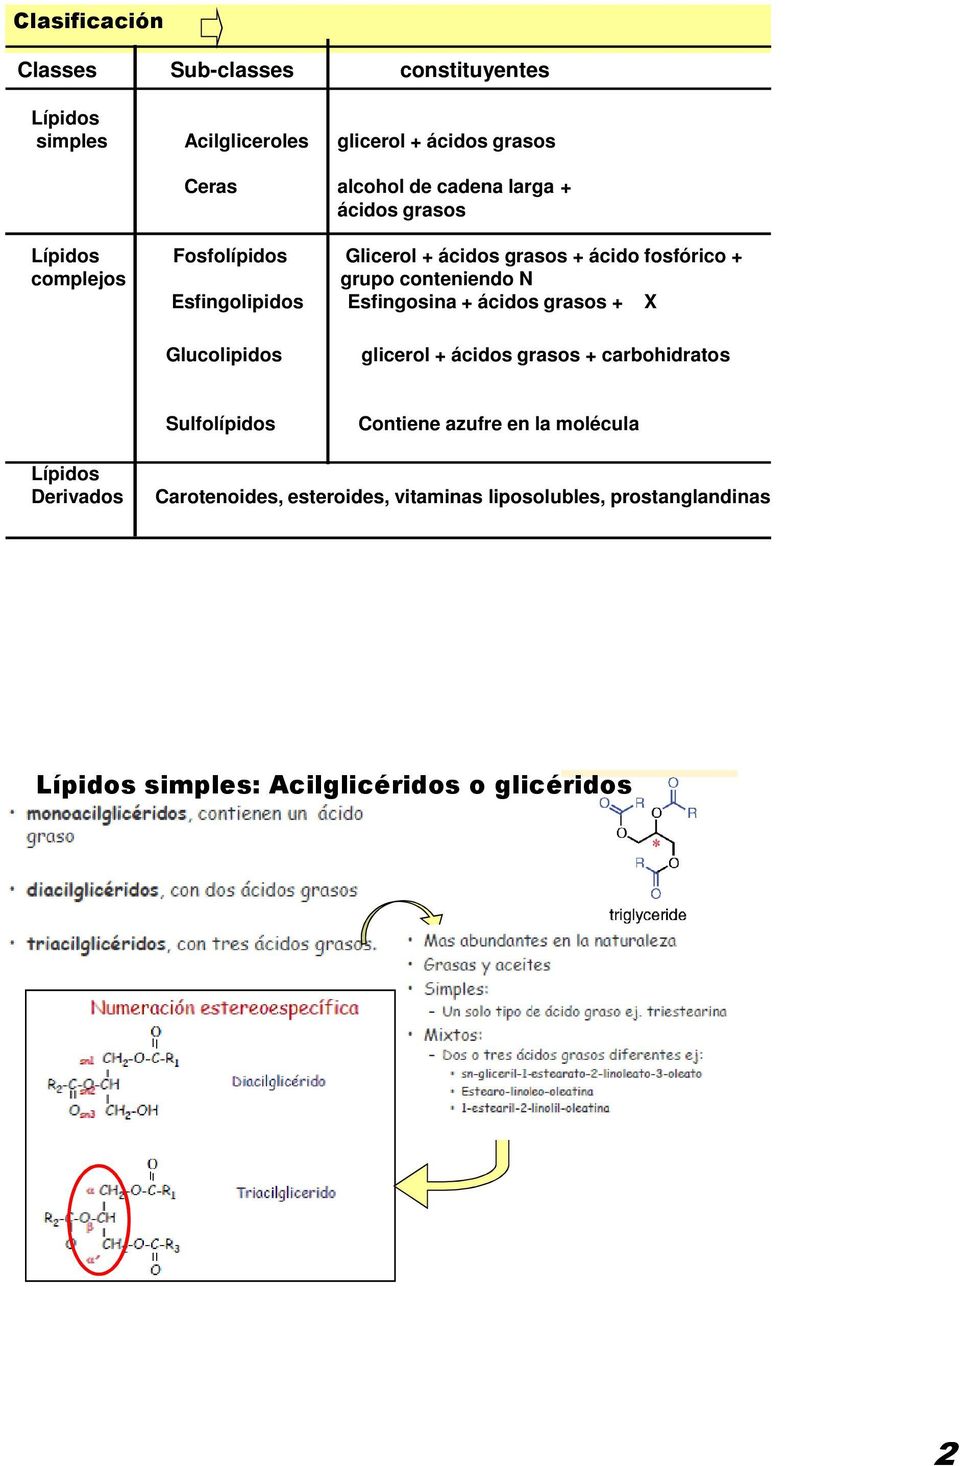 Esfingolipidos Esfingosina + ácidos grasos + X Glucolipidos glicerol + ácidos grasos + carbohidratos Sulfolípidos Contiene azufre